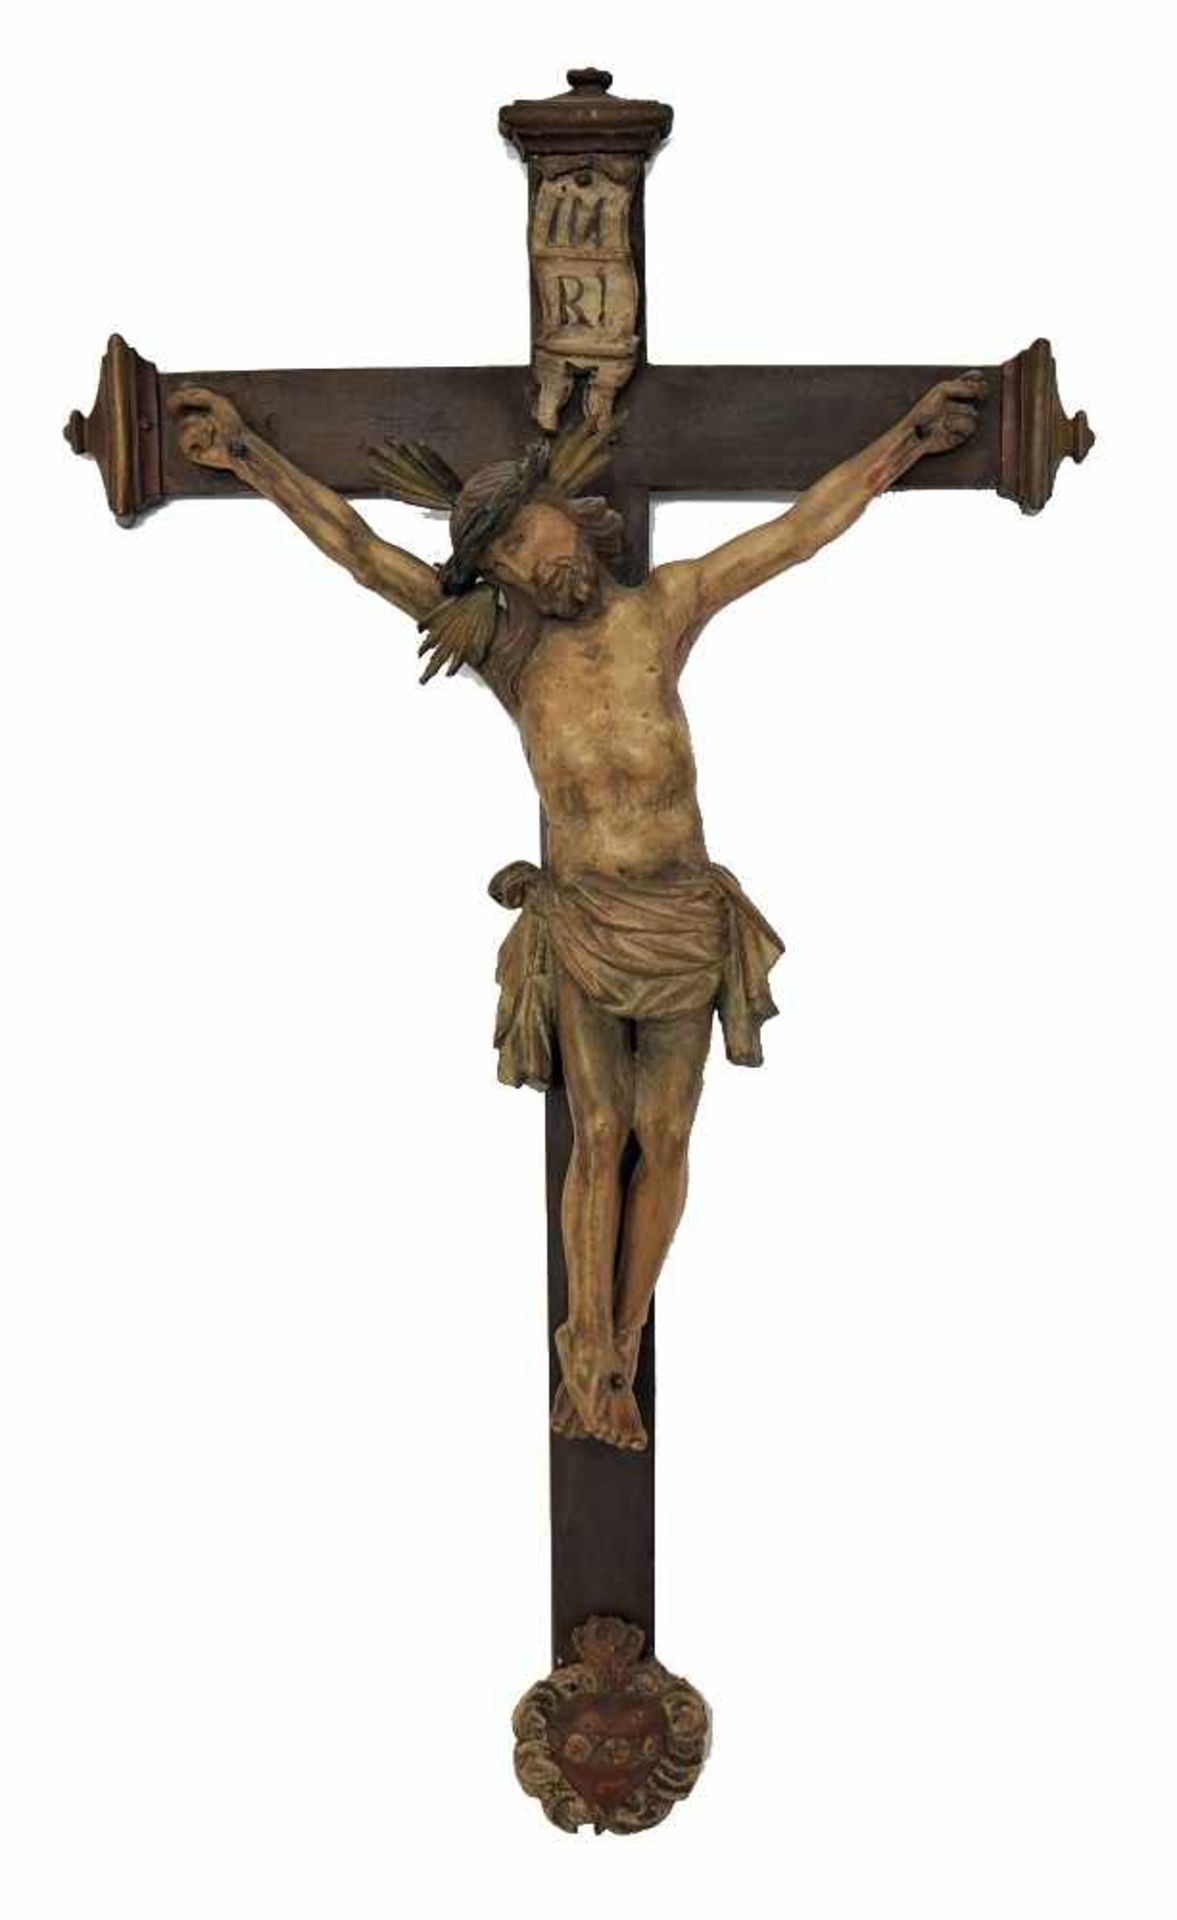 Kruzifix süddeutsch, wohl mitte 18. Jh.Holzkreuz gefasst und dunkel lasiert, profilierte Enden.